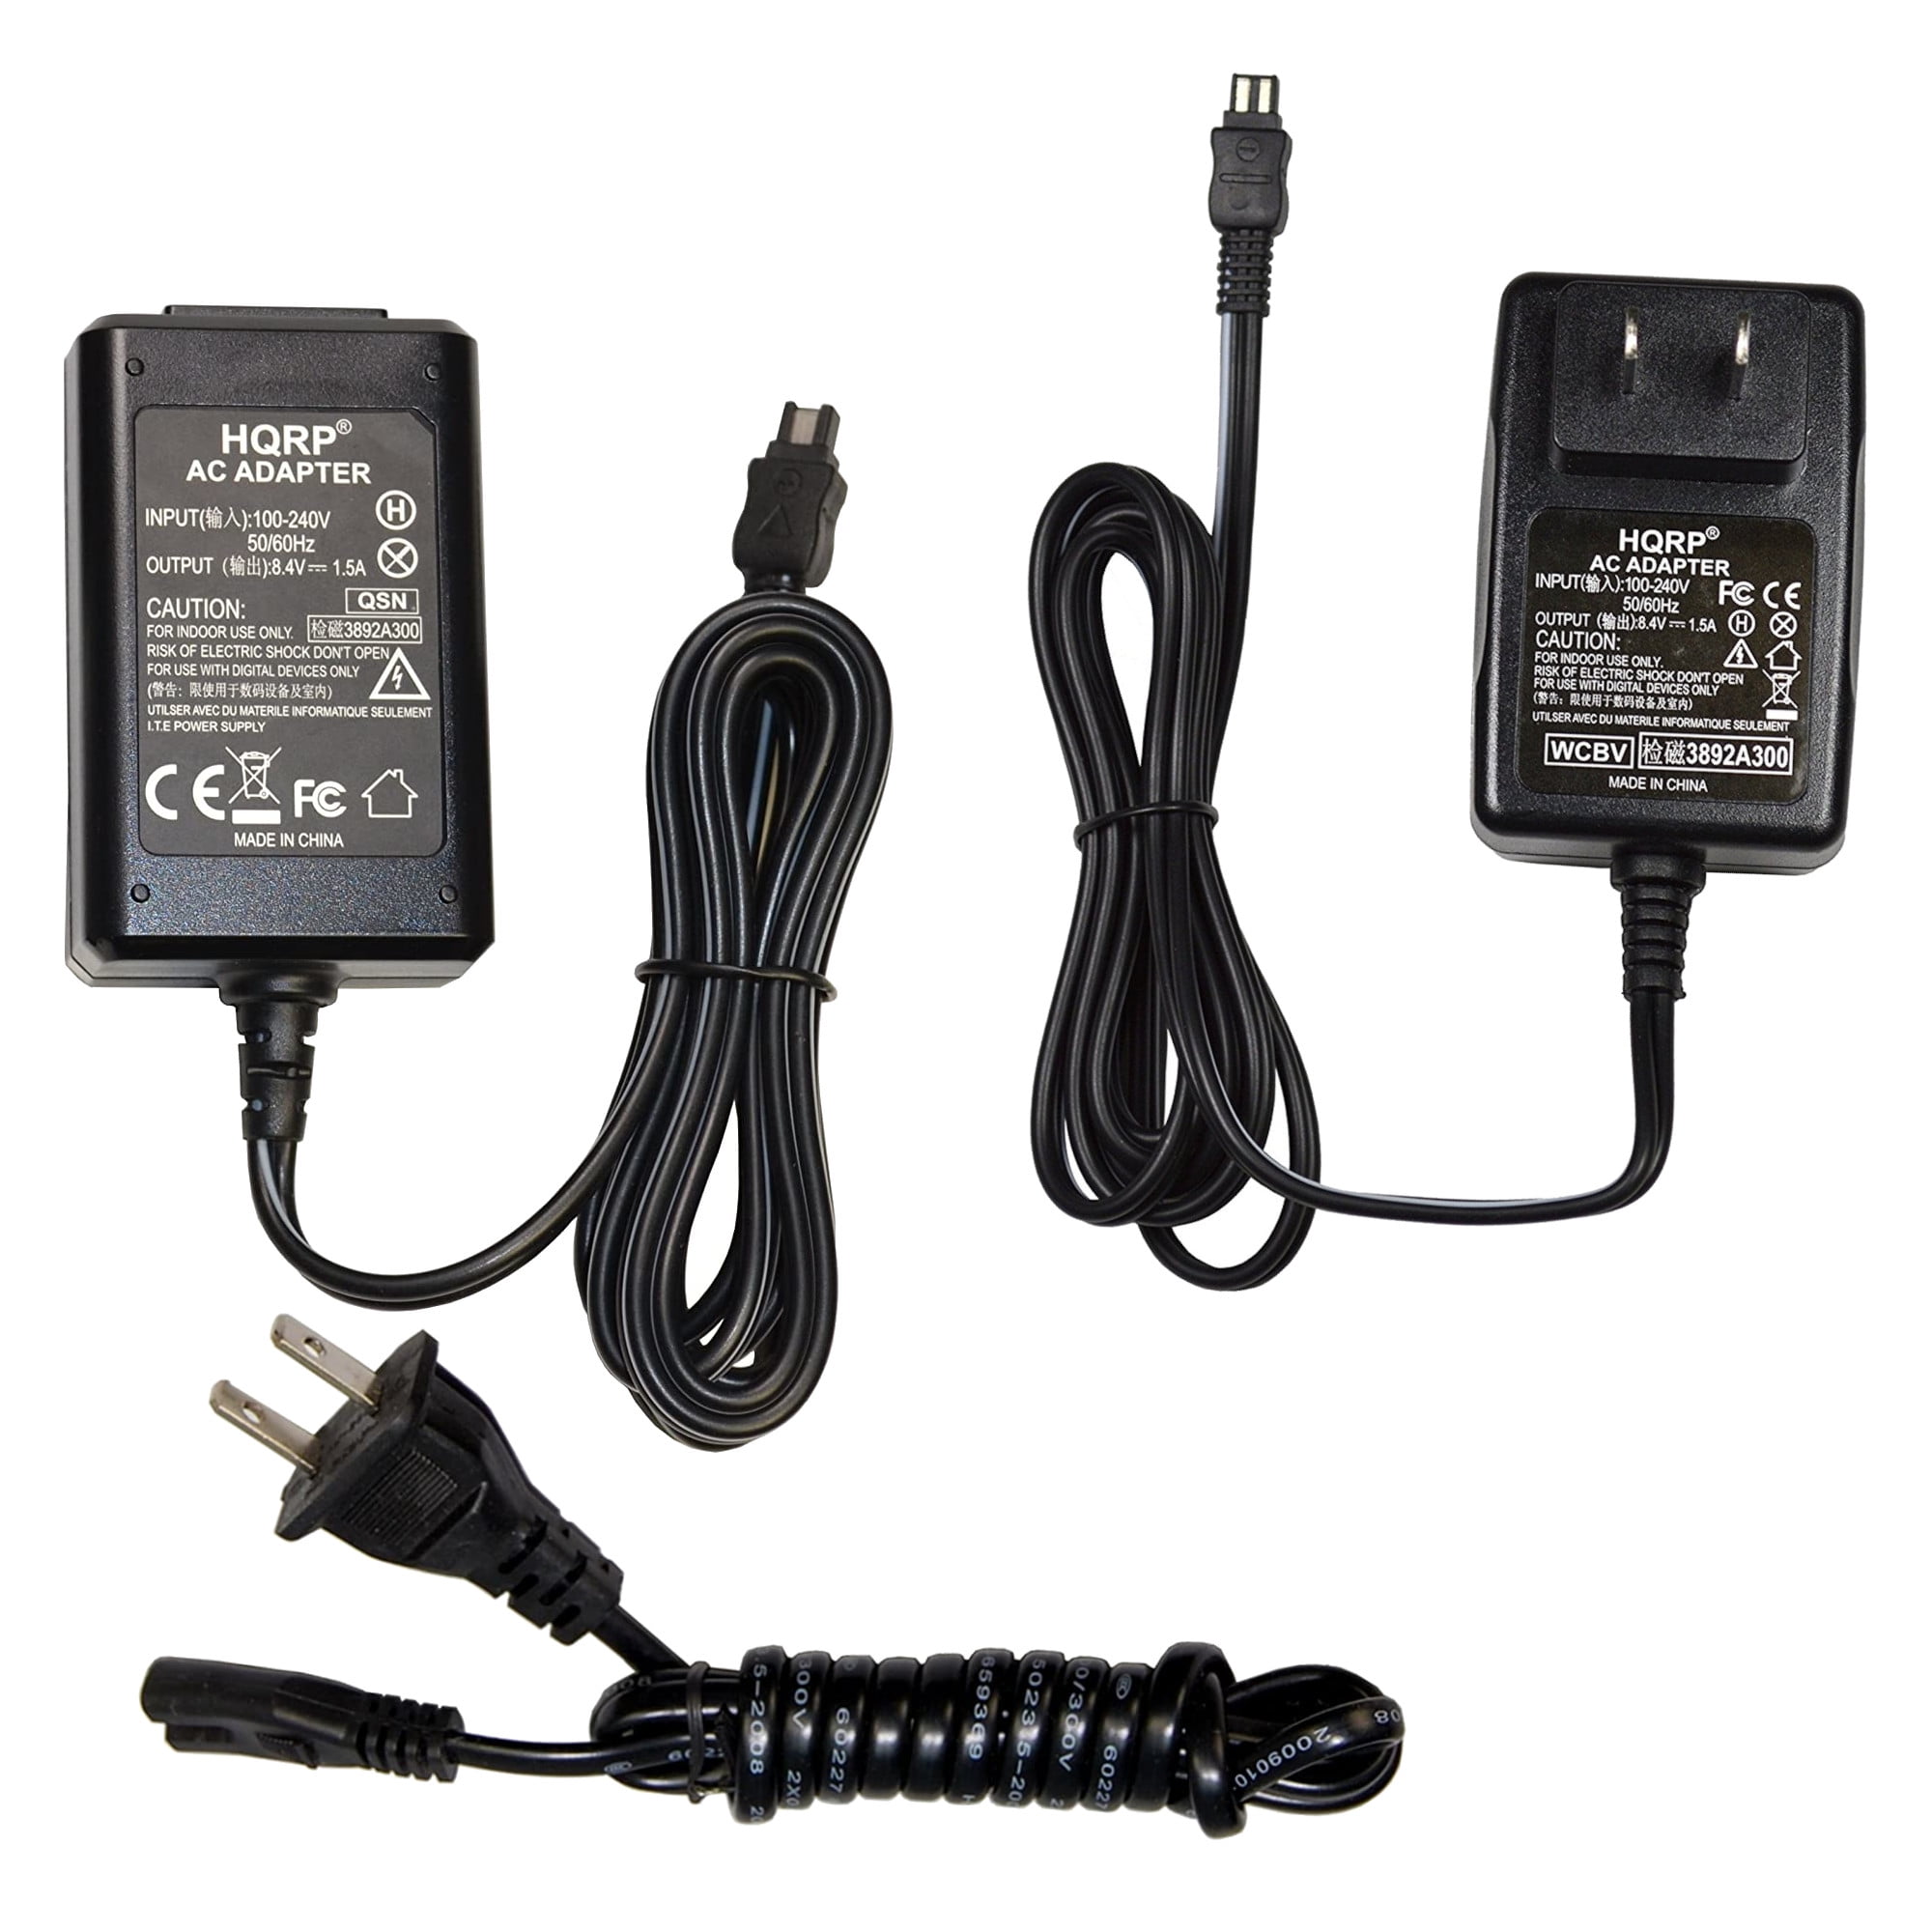 Original SONY 8.4 V AC Power adaptador para DCR-DVD91 DCR-DVD100 DCR-DVD200 DCR-HC14